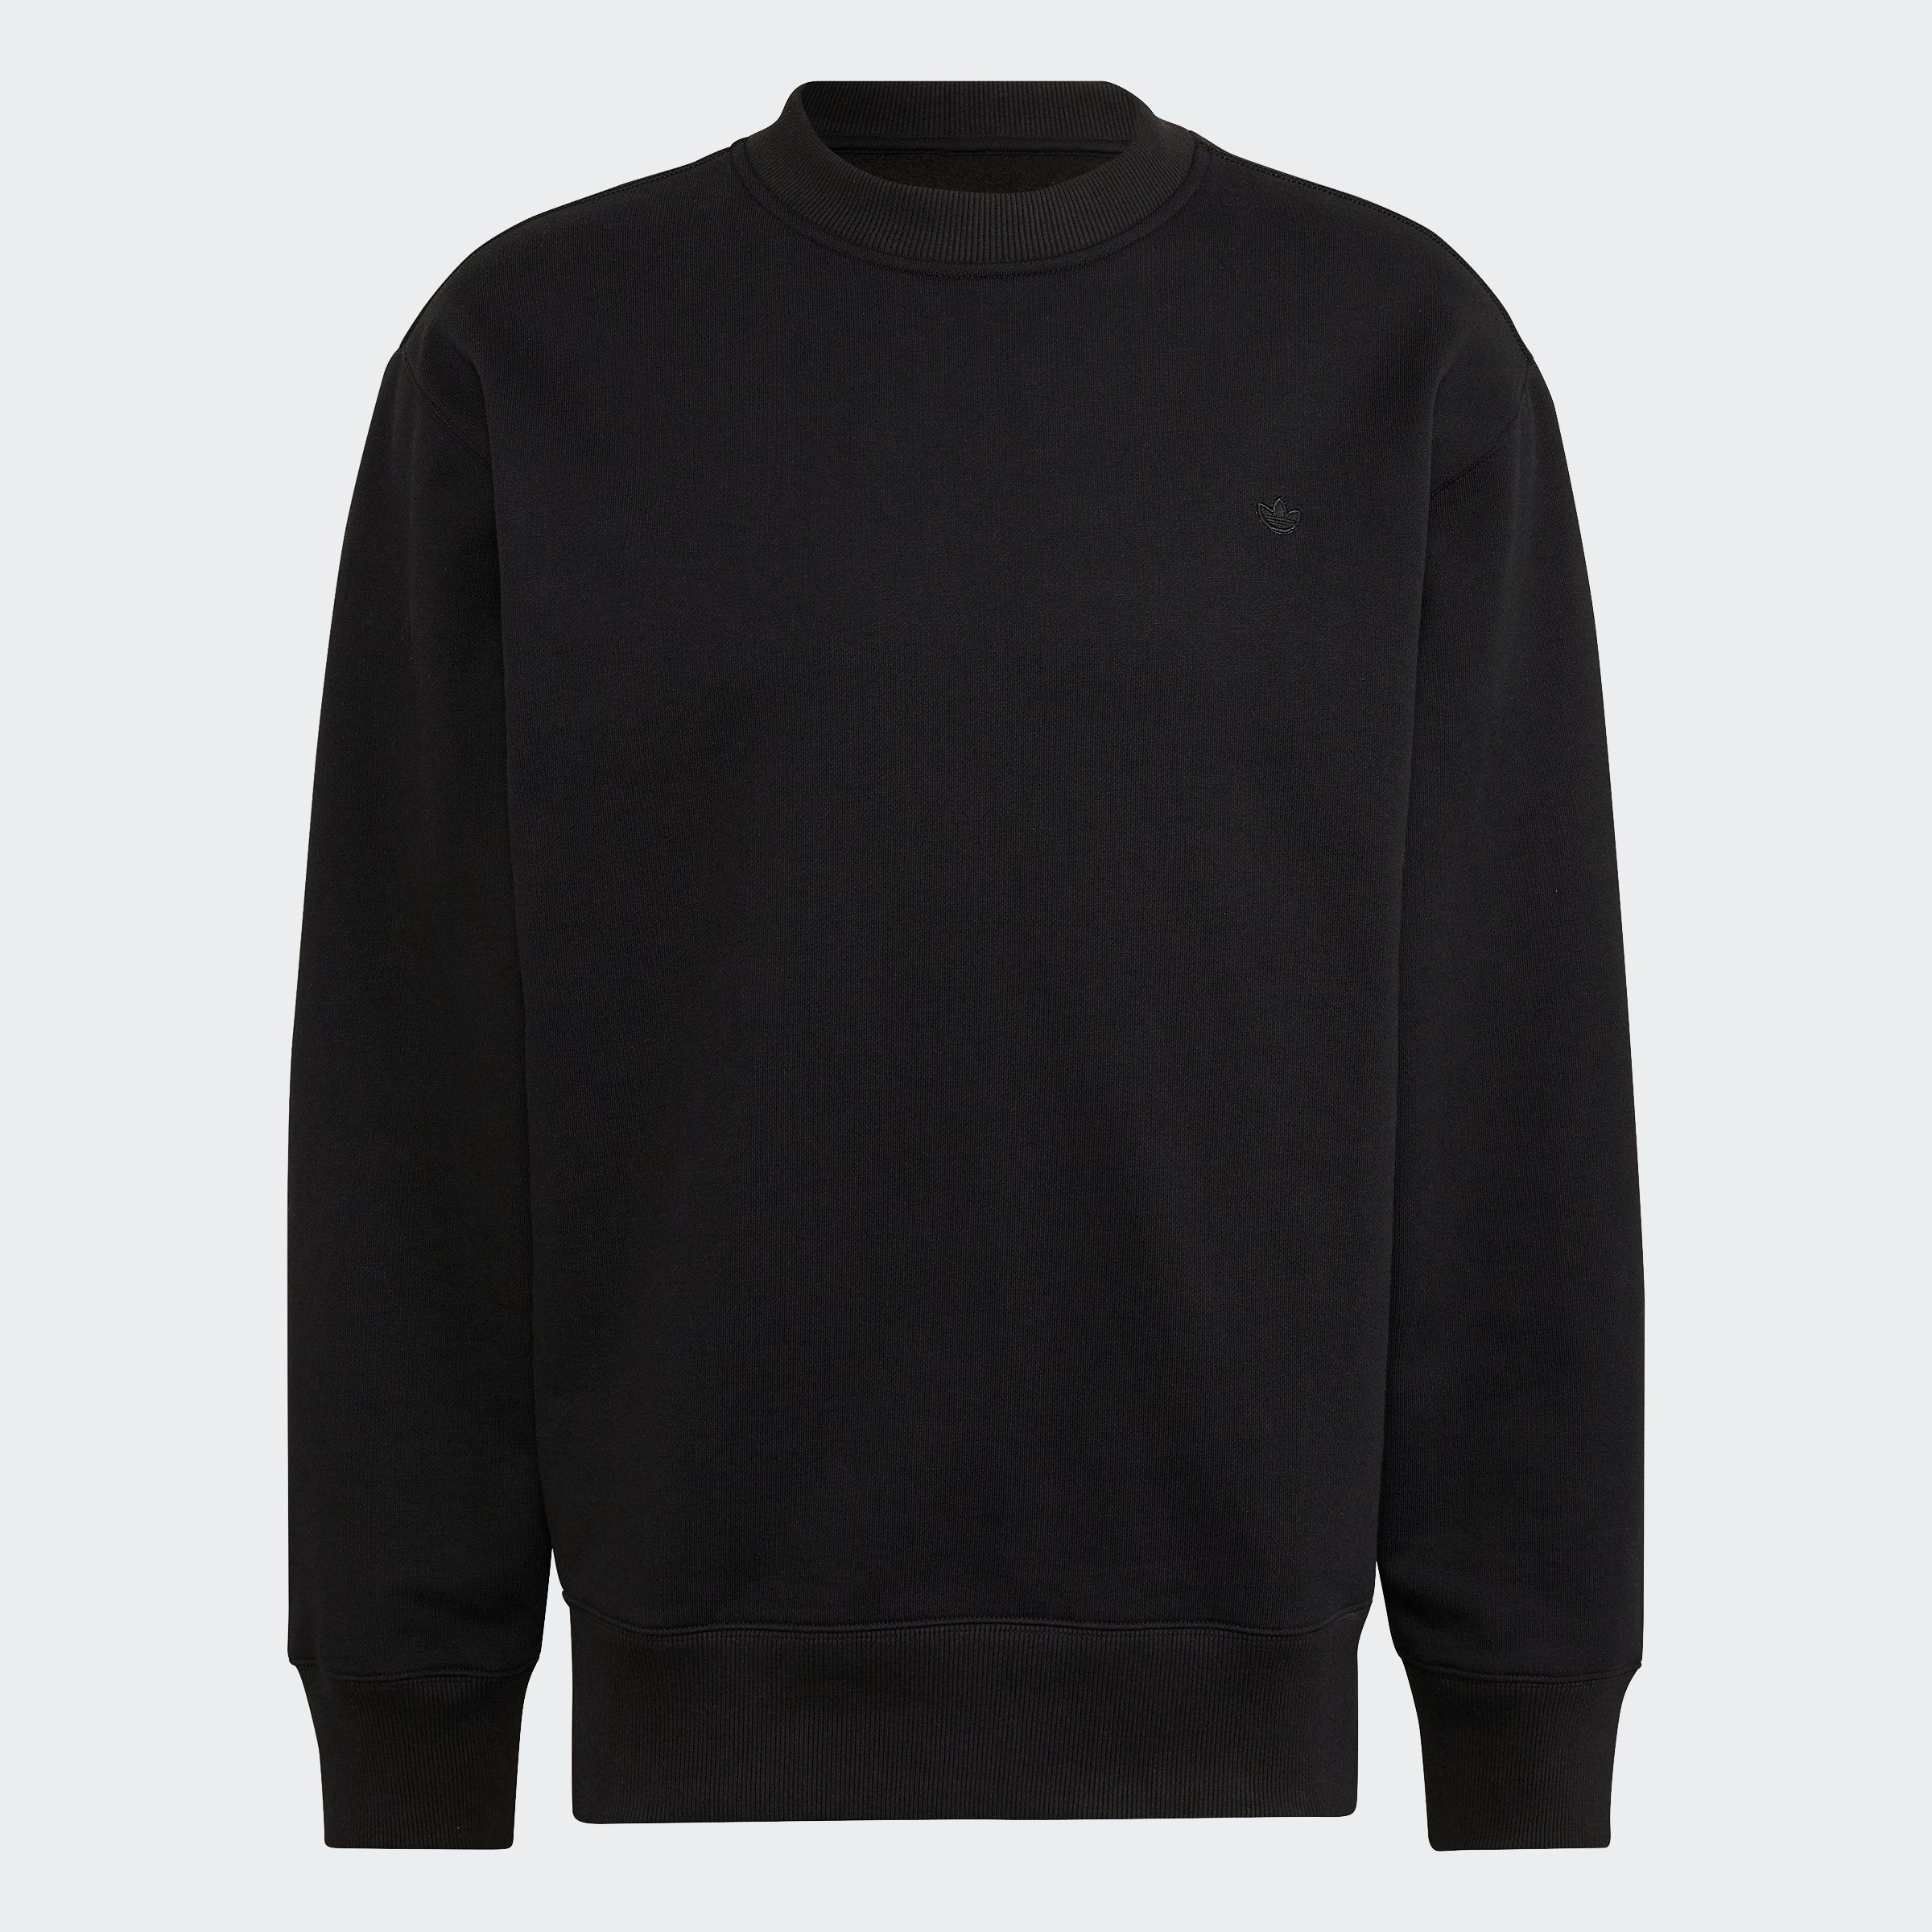 Originals C Sweatshirt adidas Crew black